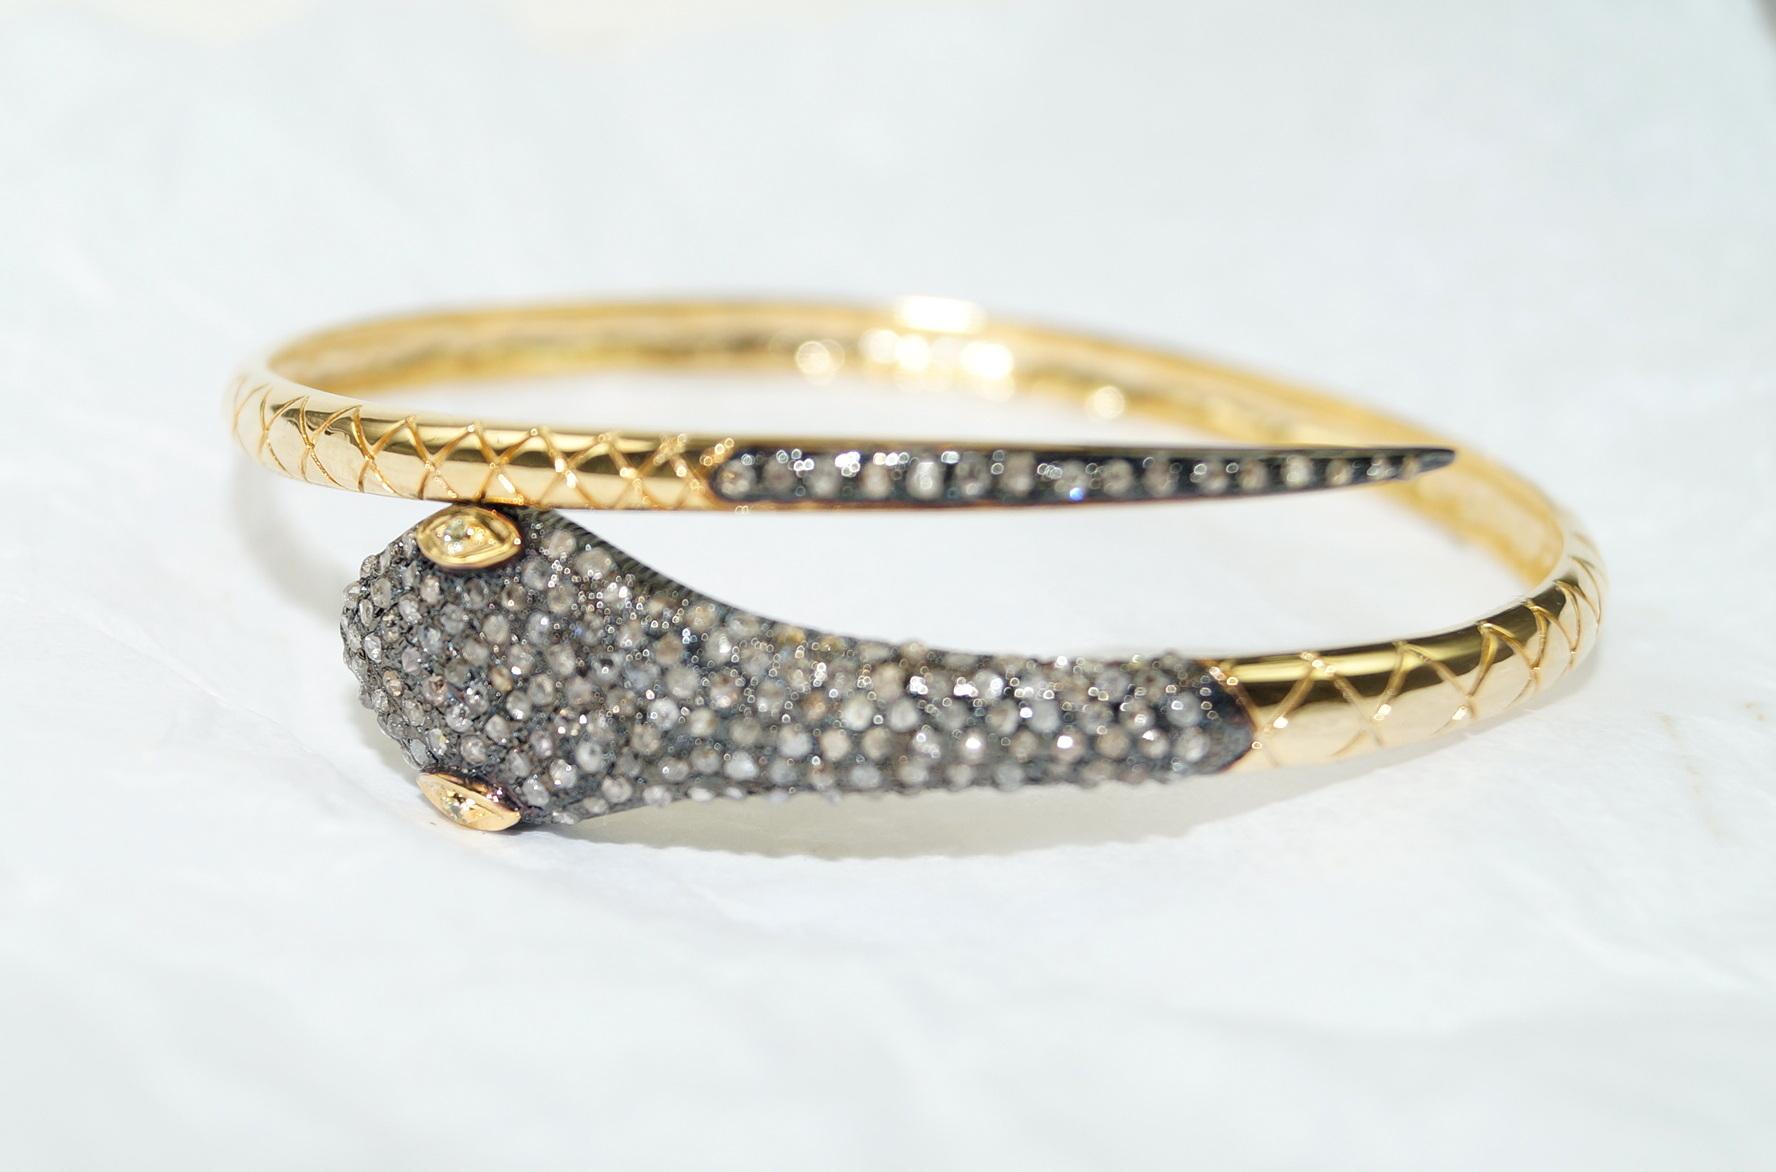 Dieses Armband aus Schlangengold ist ein vielseitiges und fesselndes Accessoire, das Ihrem Stil einen Hauch von Eleganz, Geheimnis und Individualität verleihen kann. Dieses Diamant-Goldarmband besteht aus:

Diamant- 2,88cts
Diamant-Typ: Diamanten im